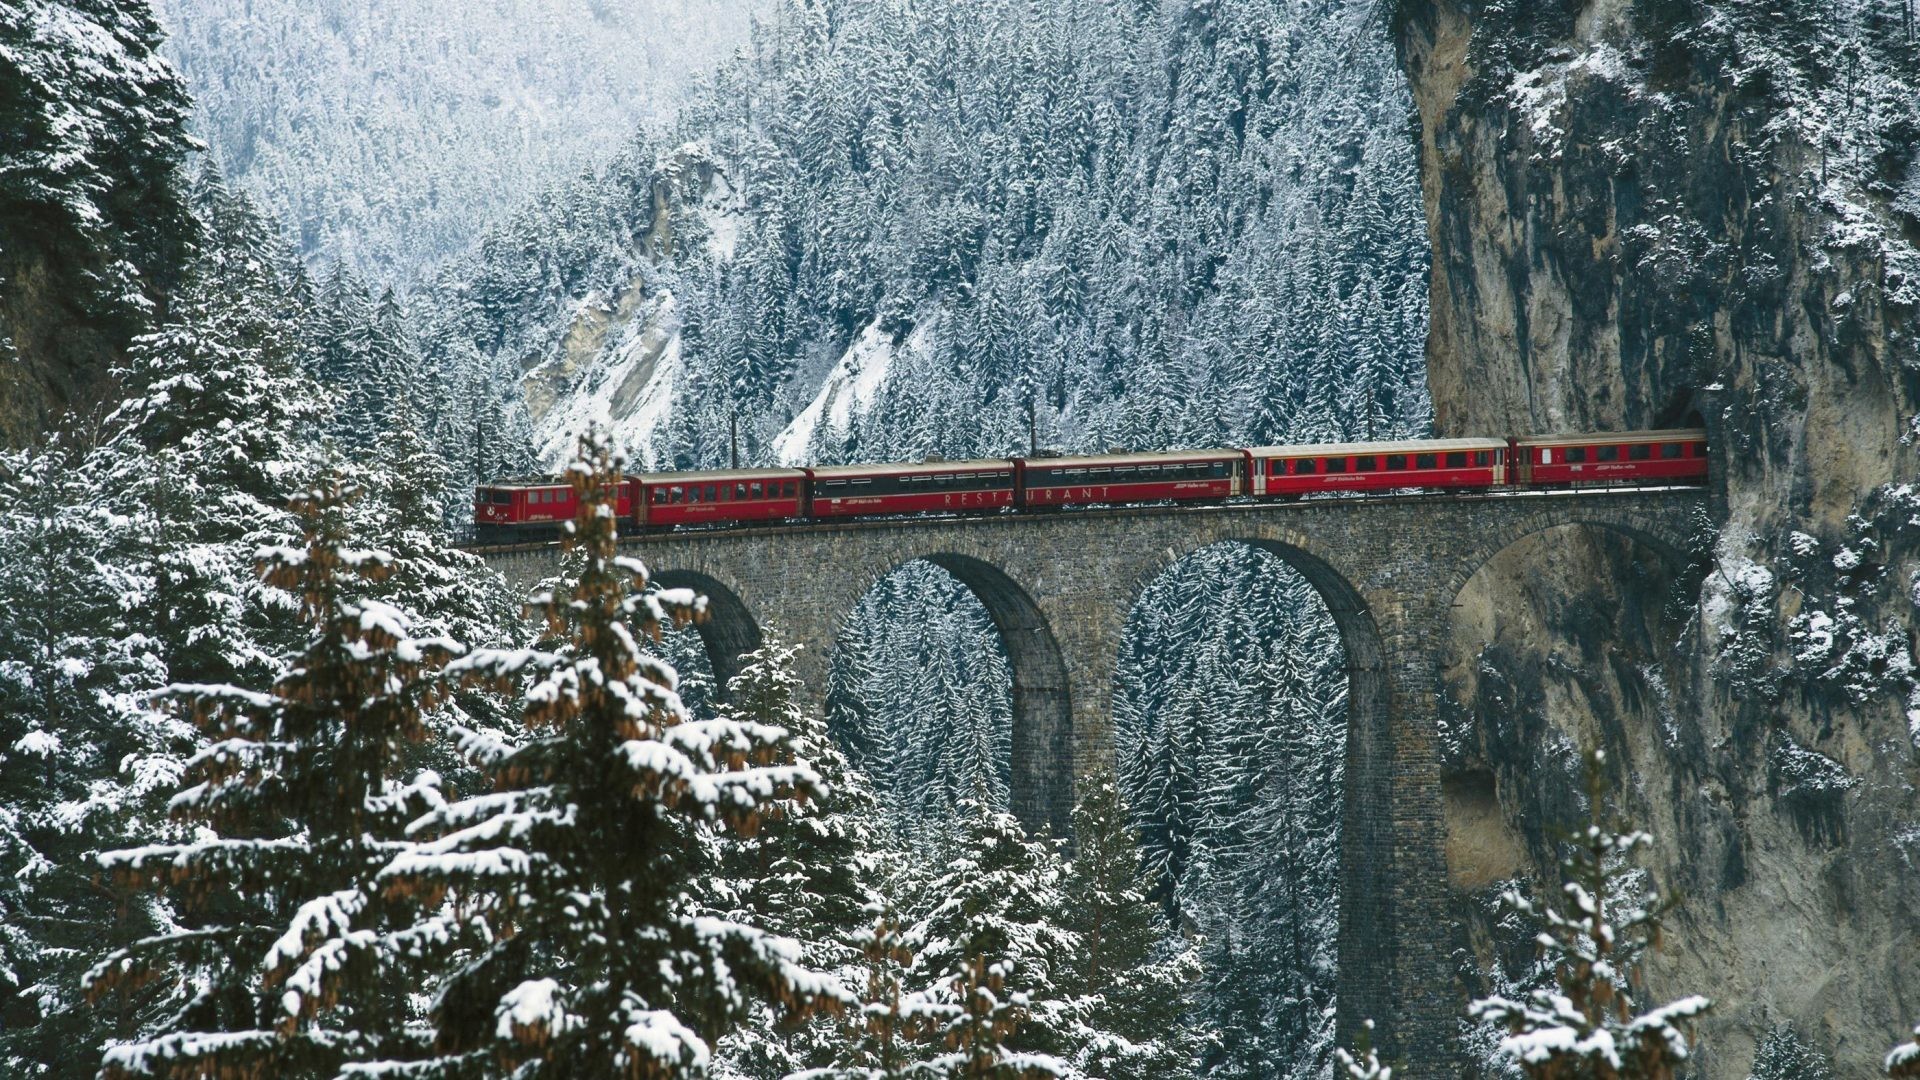 1920x1080 Winter Tag - Forest Winter Bridge Train Tunnel Desktop Scenes Free for HD  16:9